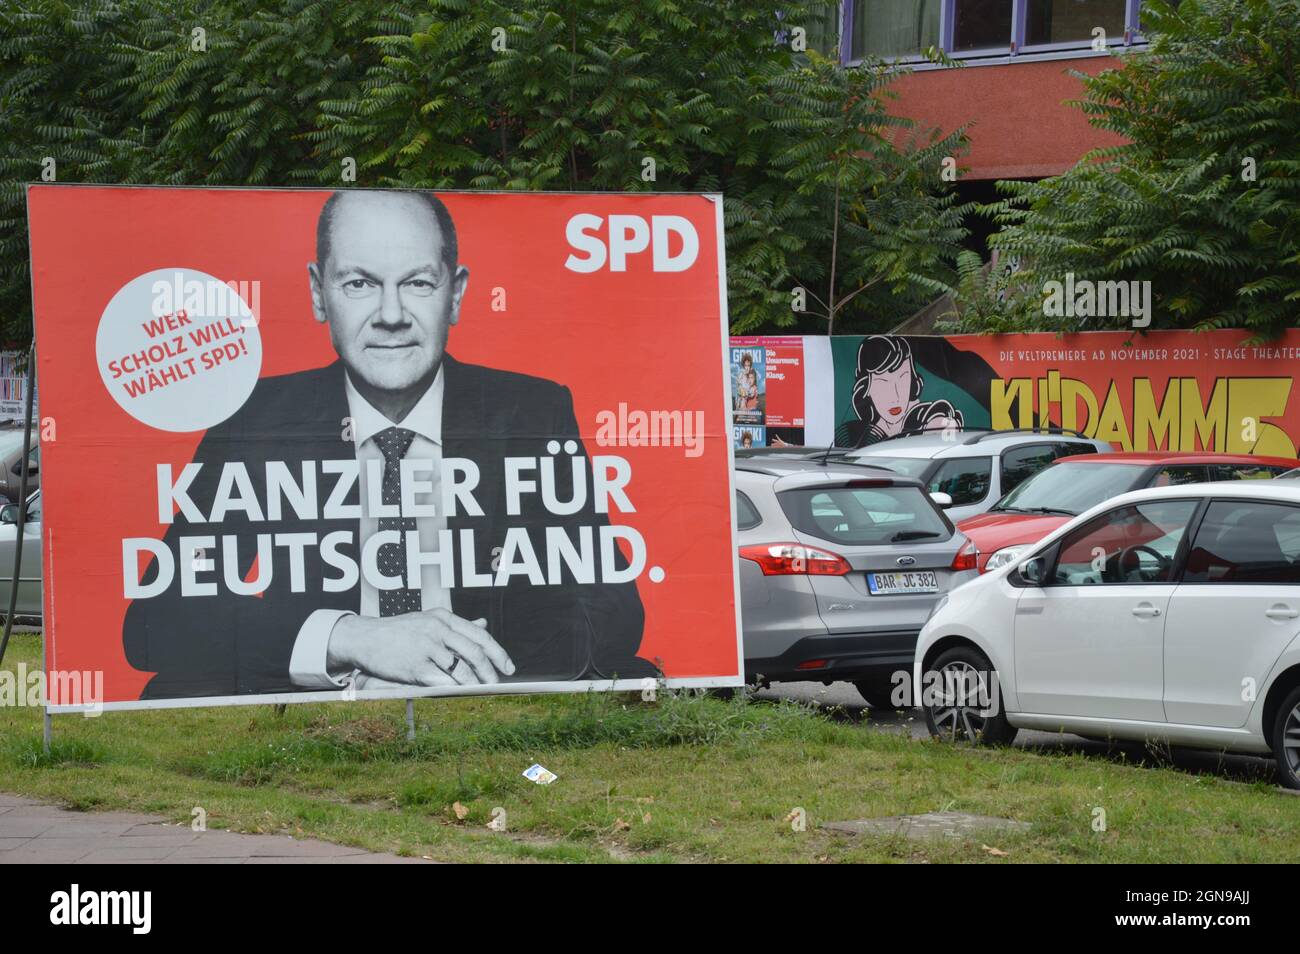 Cartel de campaña de Olaf Scholz en Landsberger Allee en Friedrichshain, Berlín, Alemania - 21 de septiembre de 2021. Foto de stock